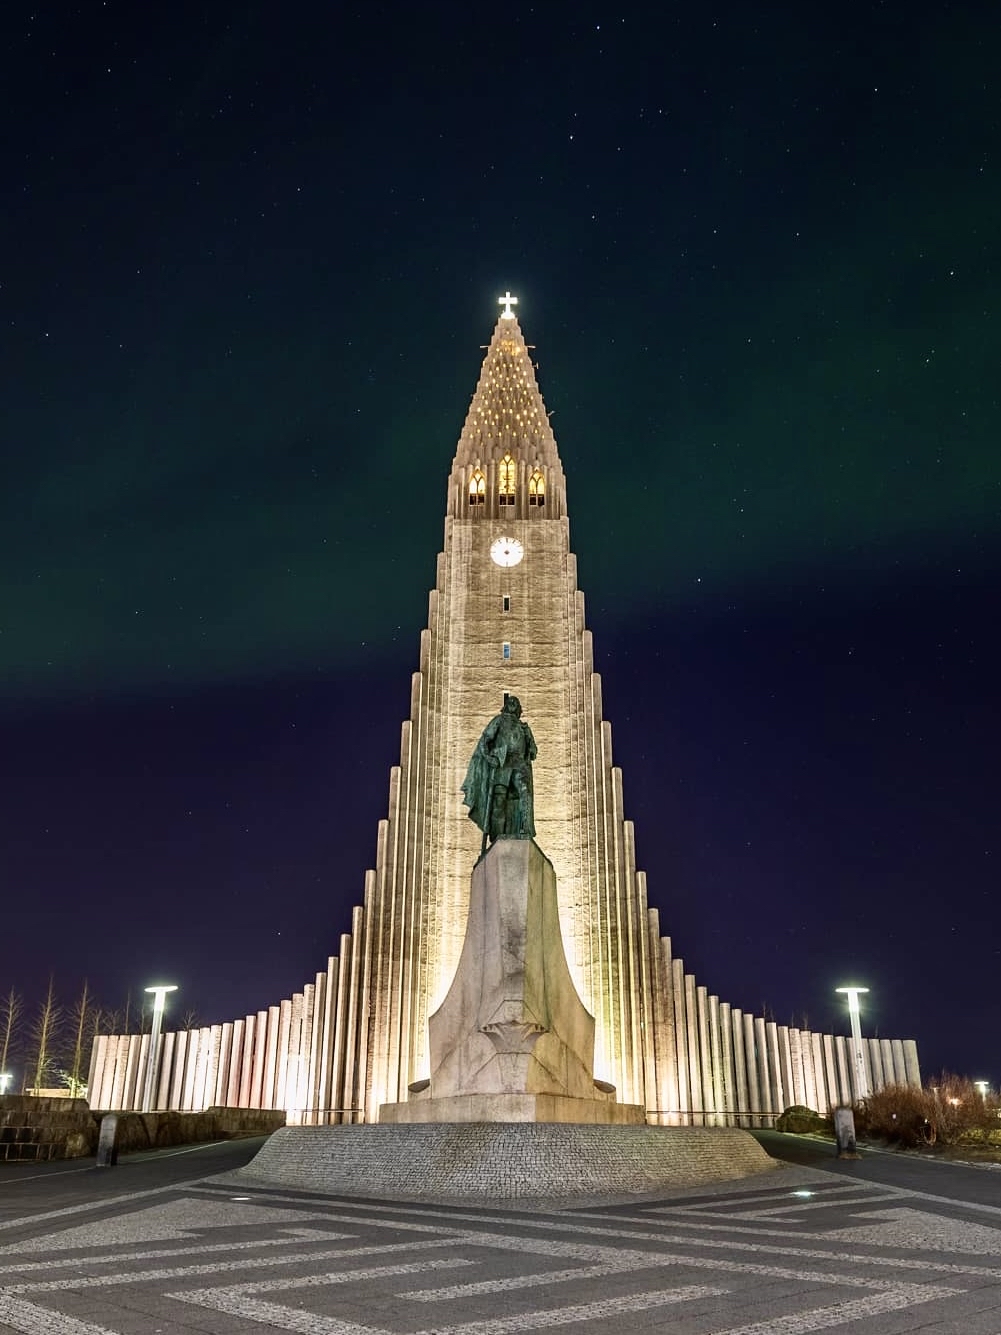 要在冰岛观赏极光，首先选择前往北极圈地区，最佳时间是9月到4月。选择远离城市光污染的地方，如黄金圈或